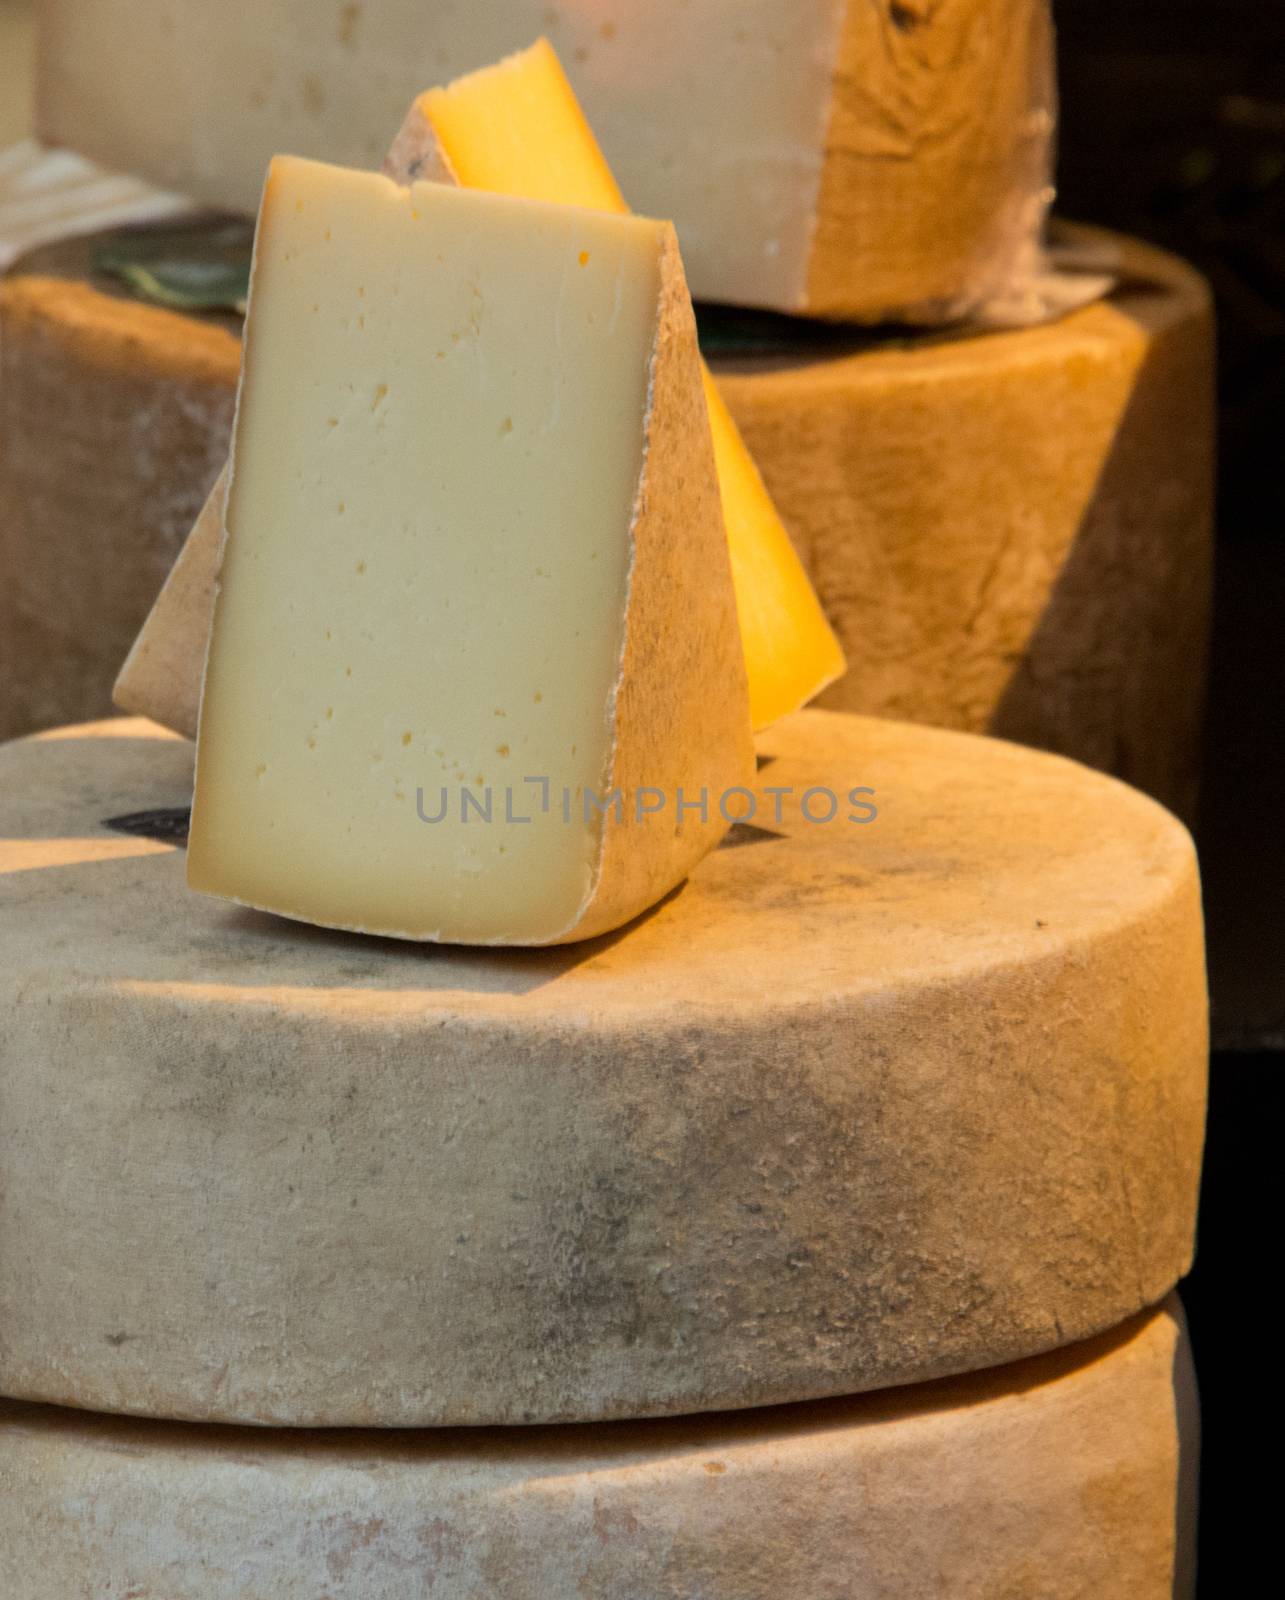 Pastura Cheese